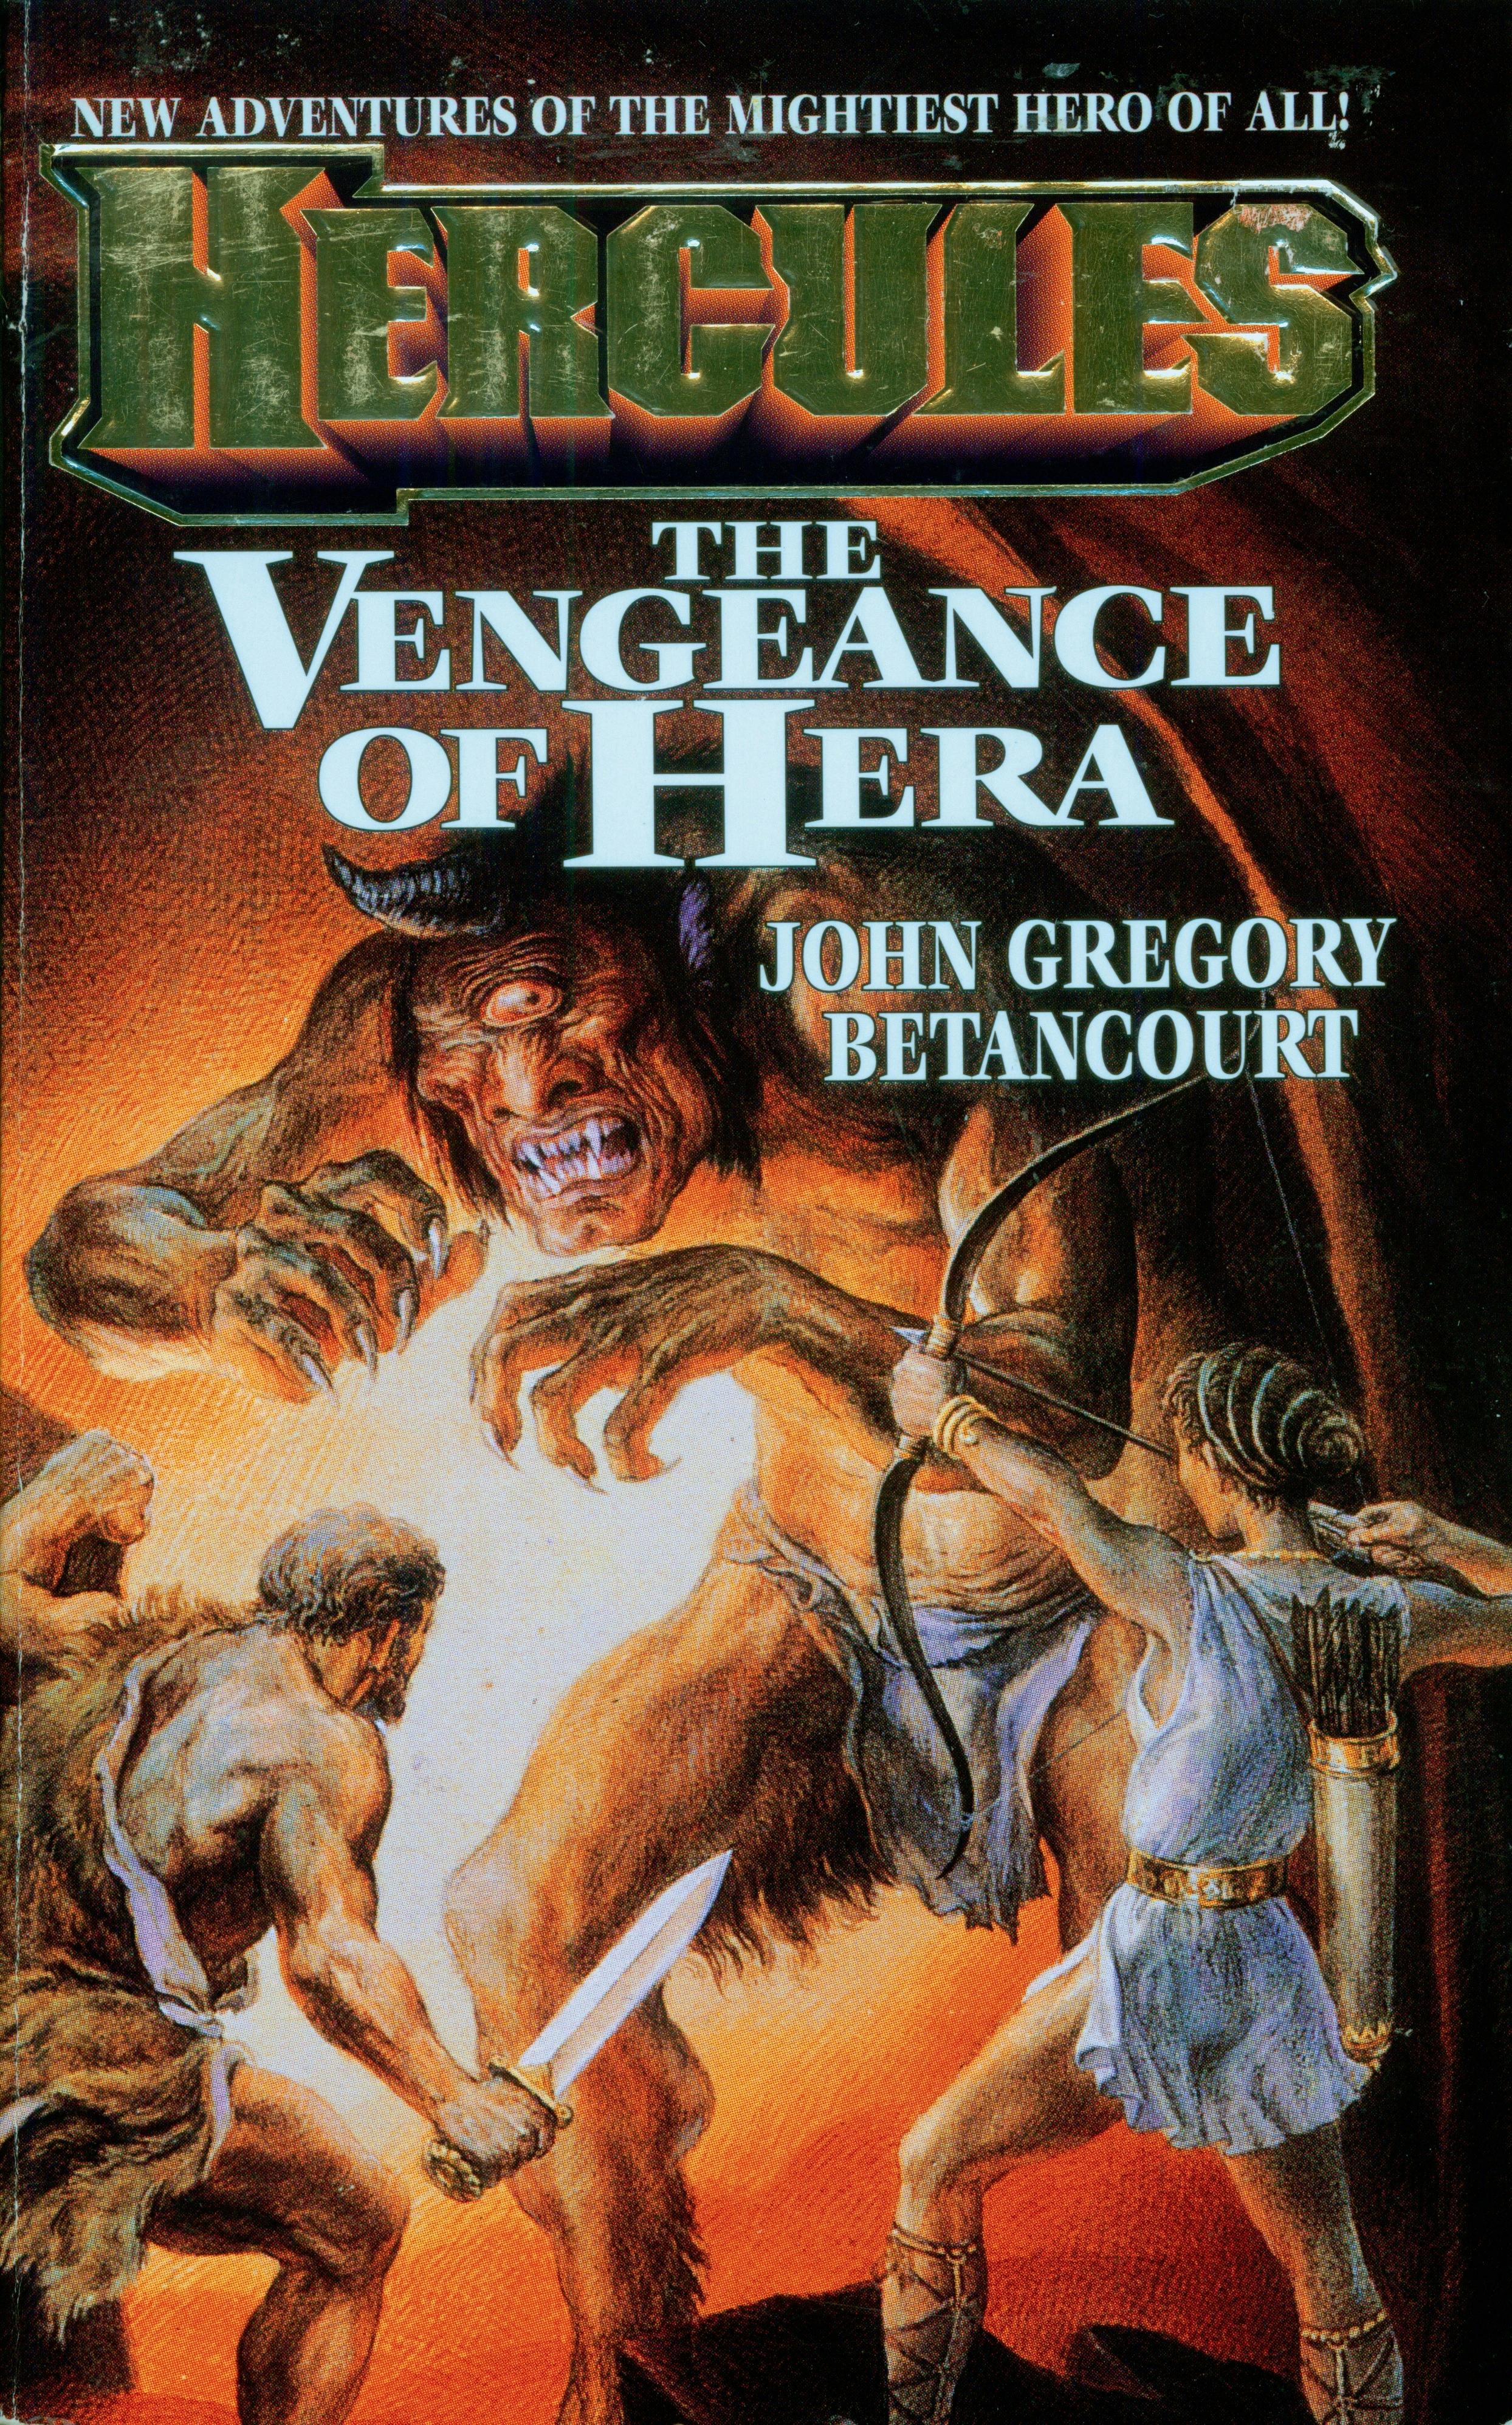 The Vengeance of Hera